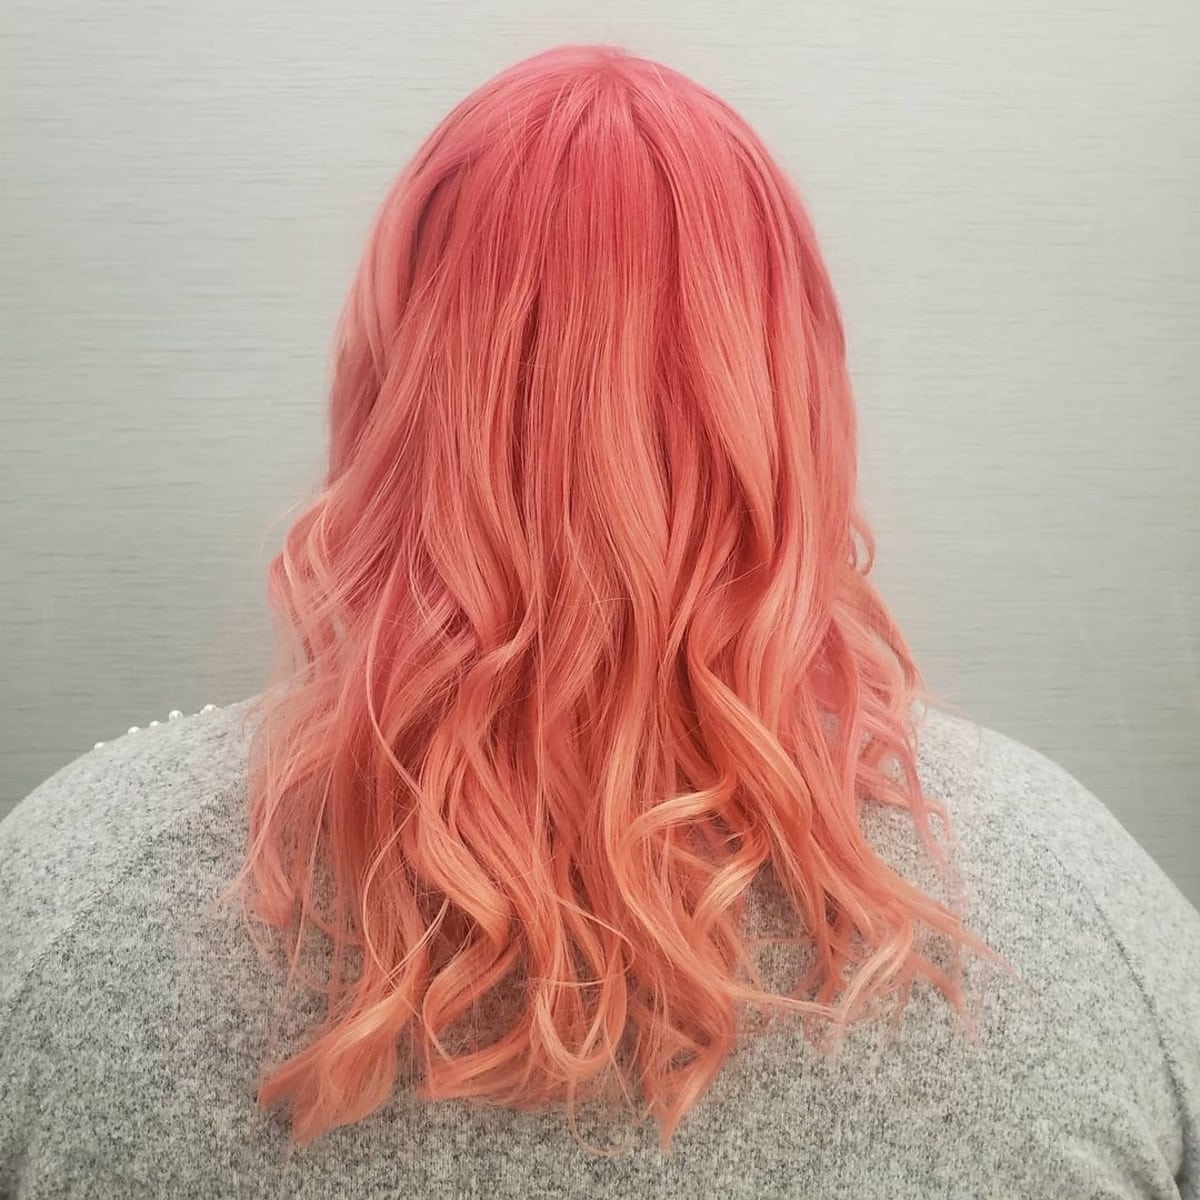 Sunset pink hair